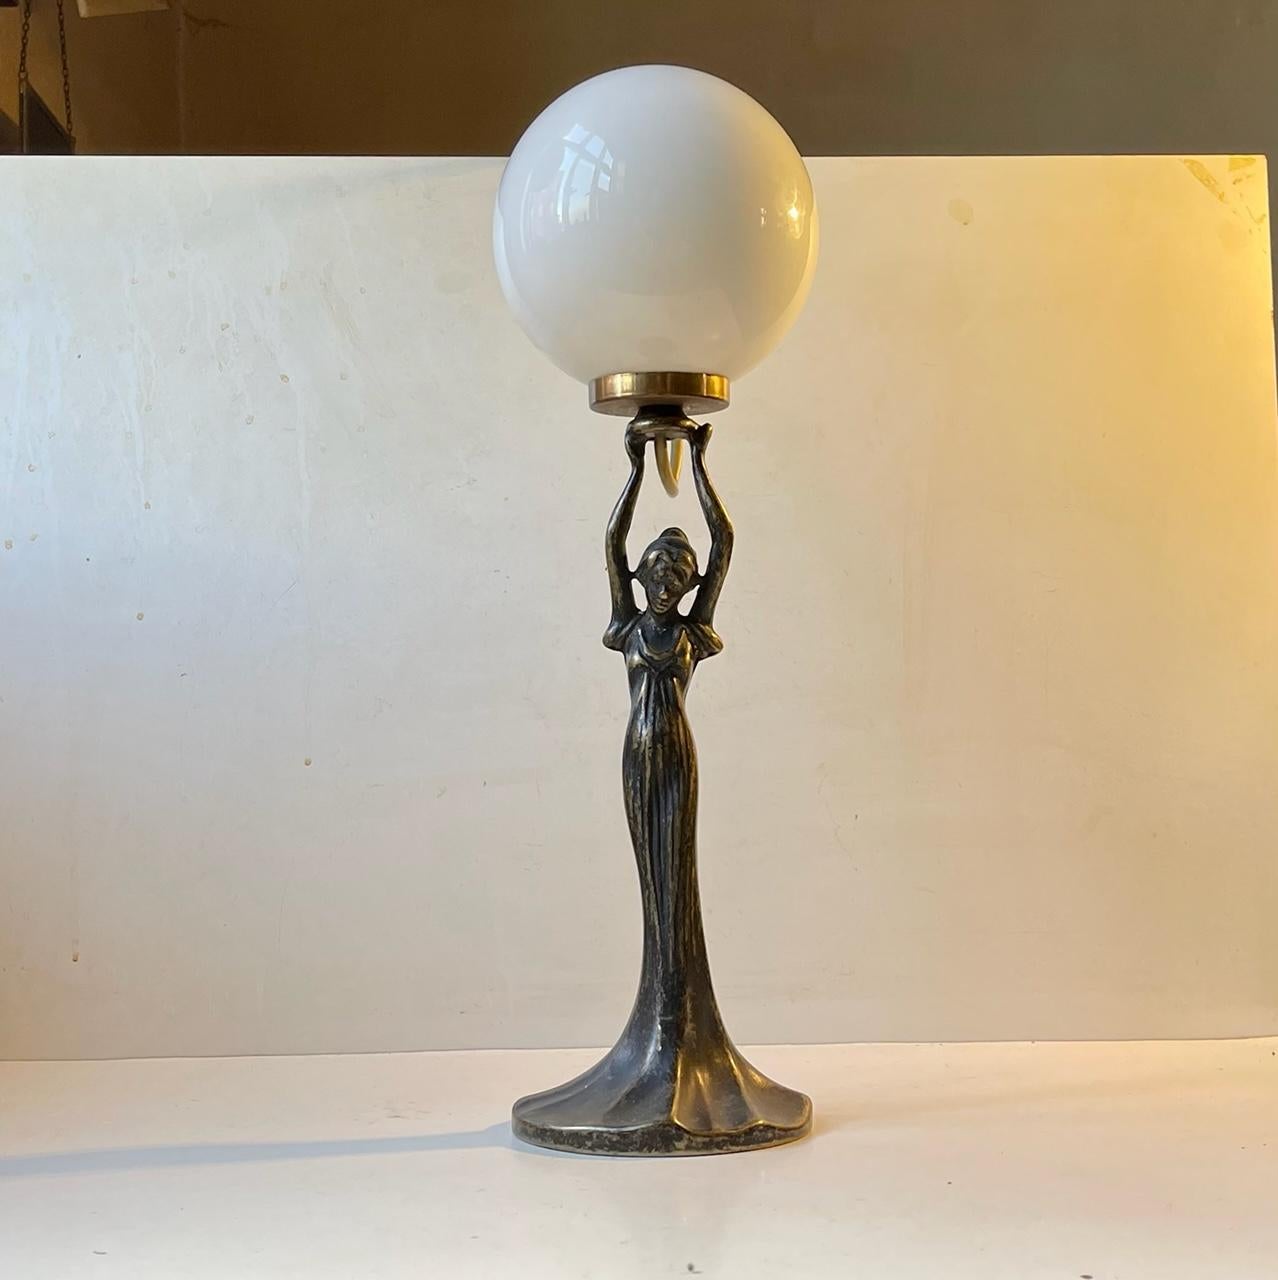 Lampe de table élégante en bronze patiné sertie d'un abat-jour sphérique en verre opalin blanc. Elle a été fabriquée en Italie dans les années 1980 en s'inspirant du style Art déco des années 1920/1930. Il est imprimé sur sa base : Made in Italy.